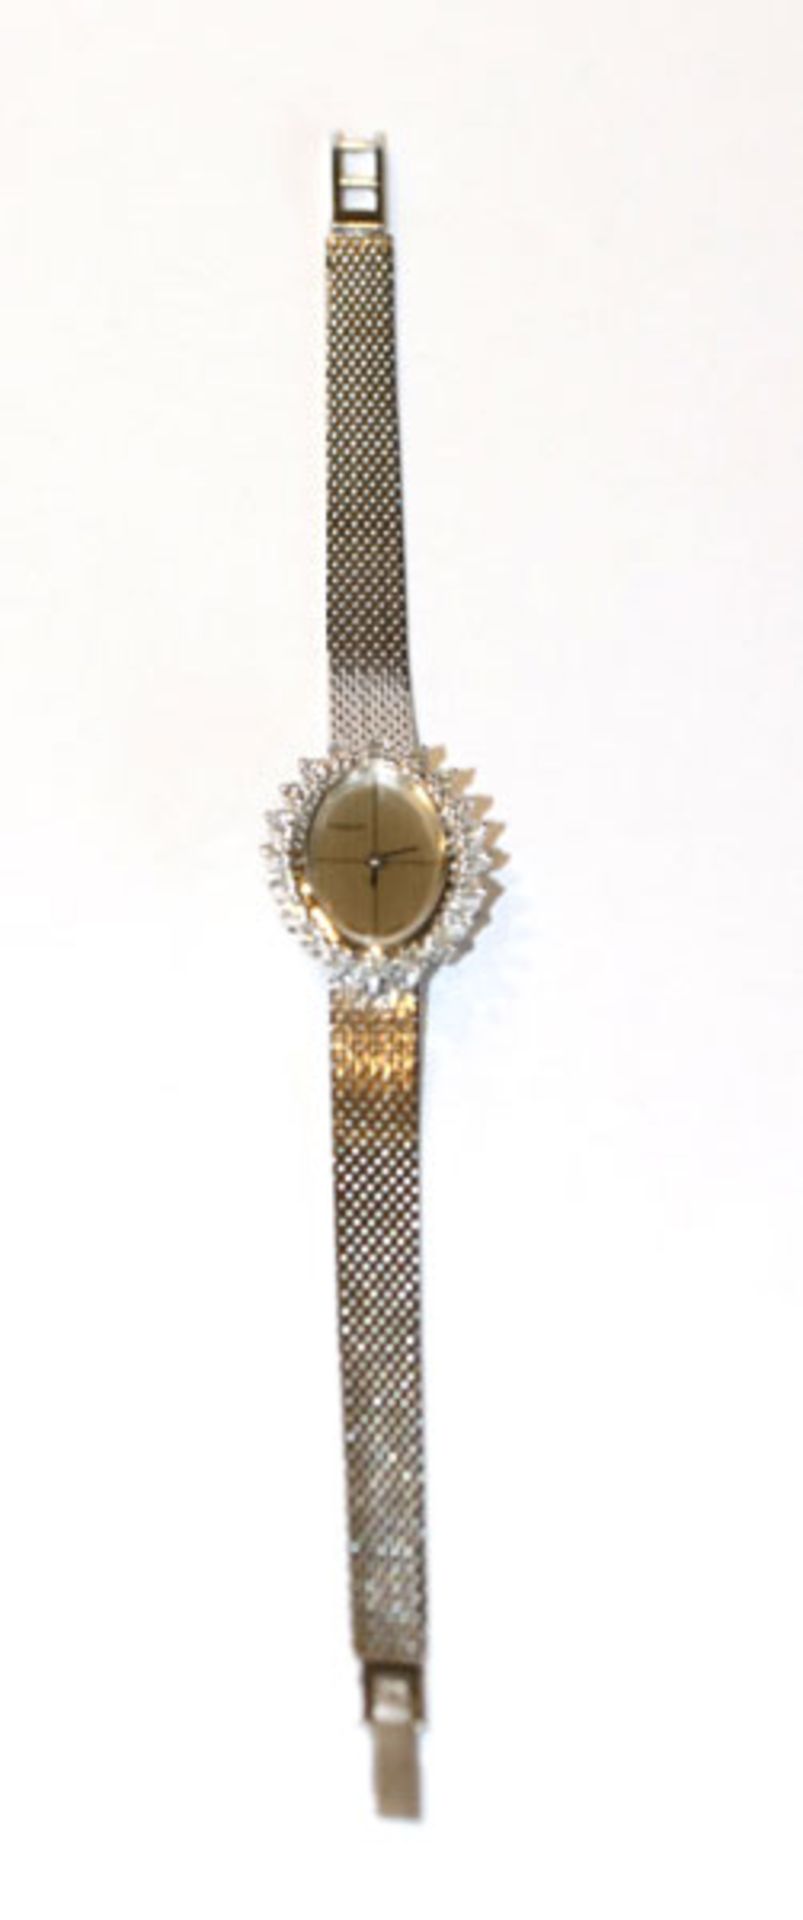 Tissot Damen Armbanduhr, 14 k Weißgold mit Diamantkranz aus 20 Diamanten, Funktion nicht geprüft,